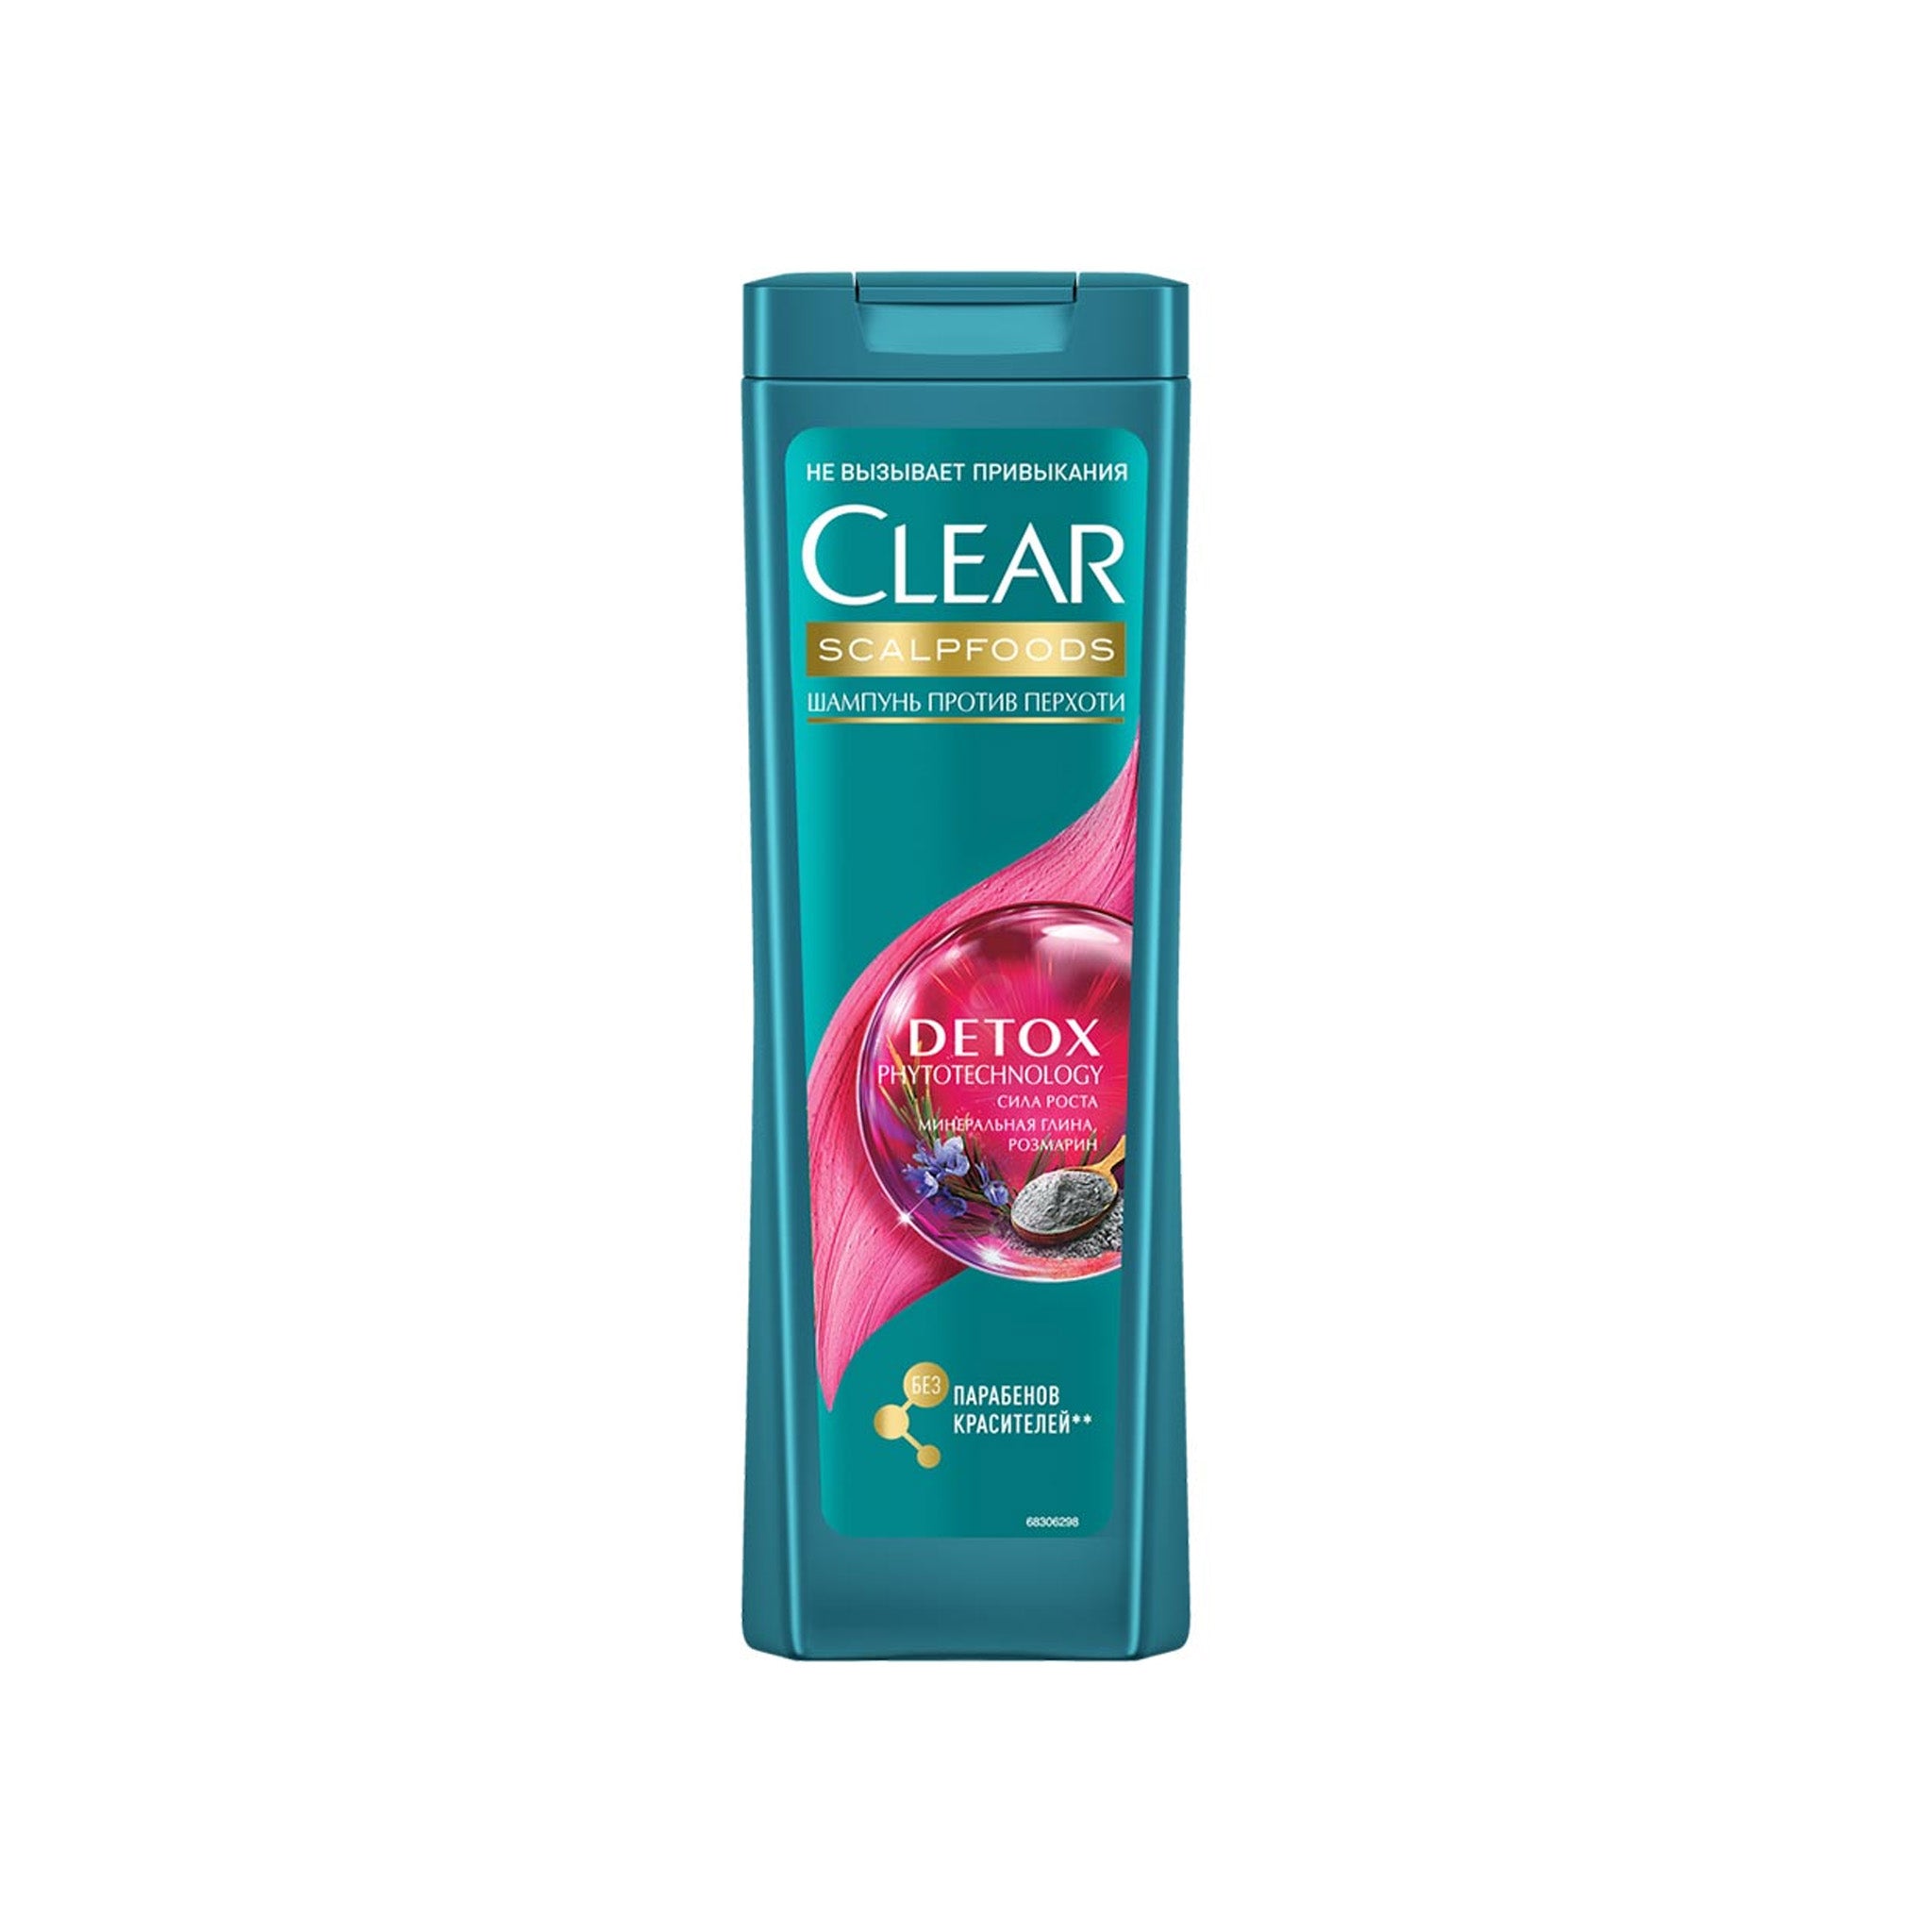 New Clear Anti-Hair Fall Detox Shampoo 400Ml